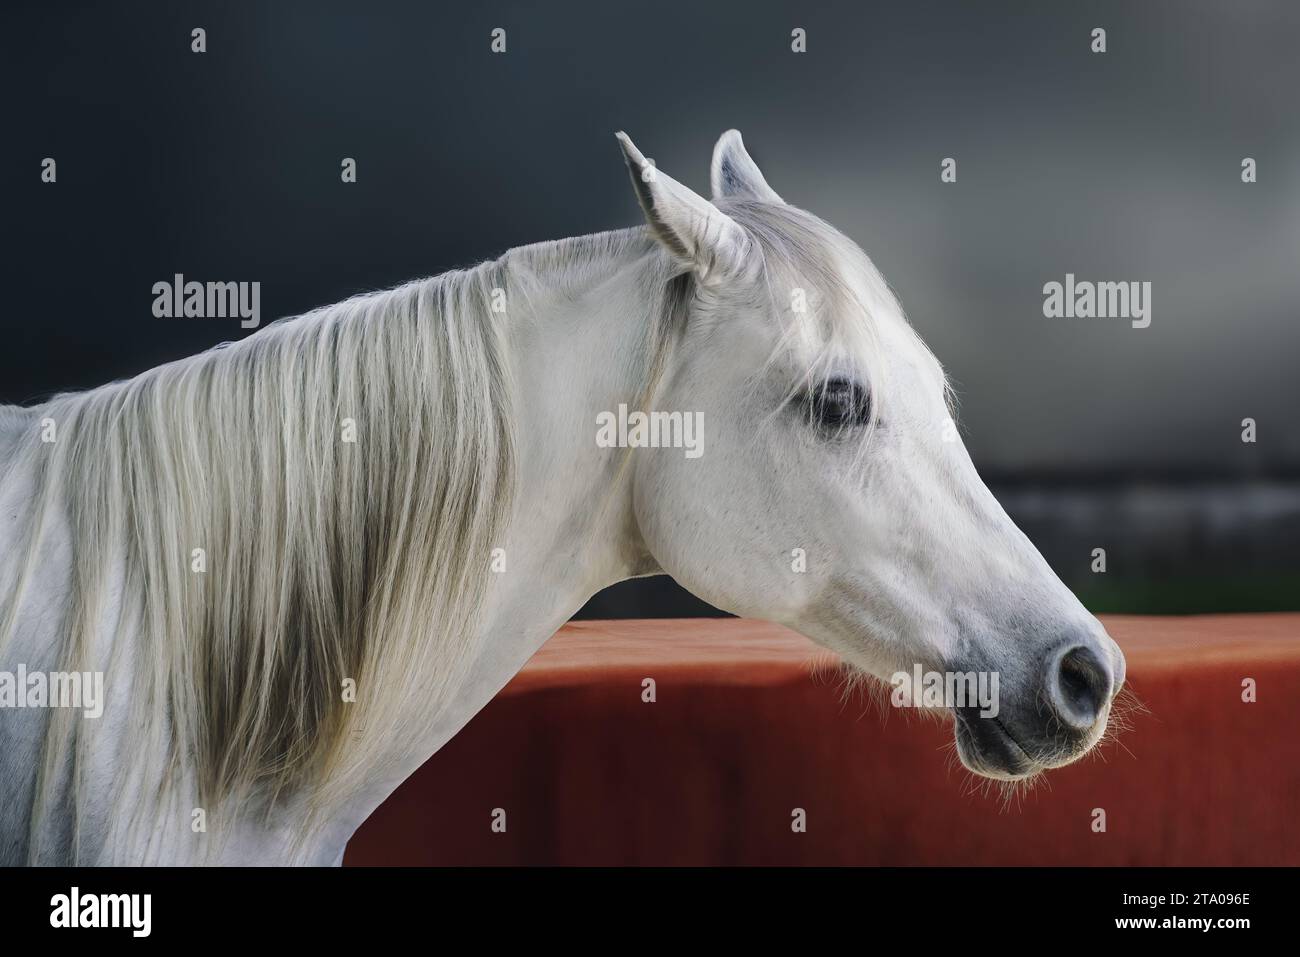 Beautiful White Horse Head (Equus ferus caballus) Stock Photo